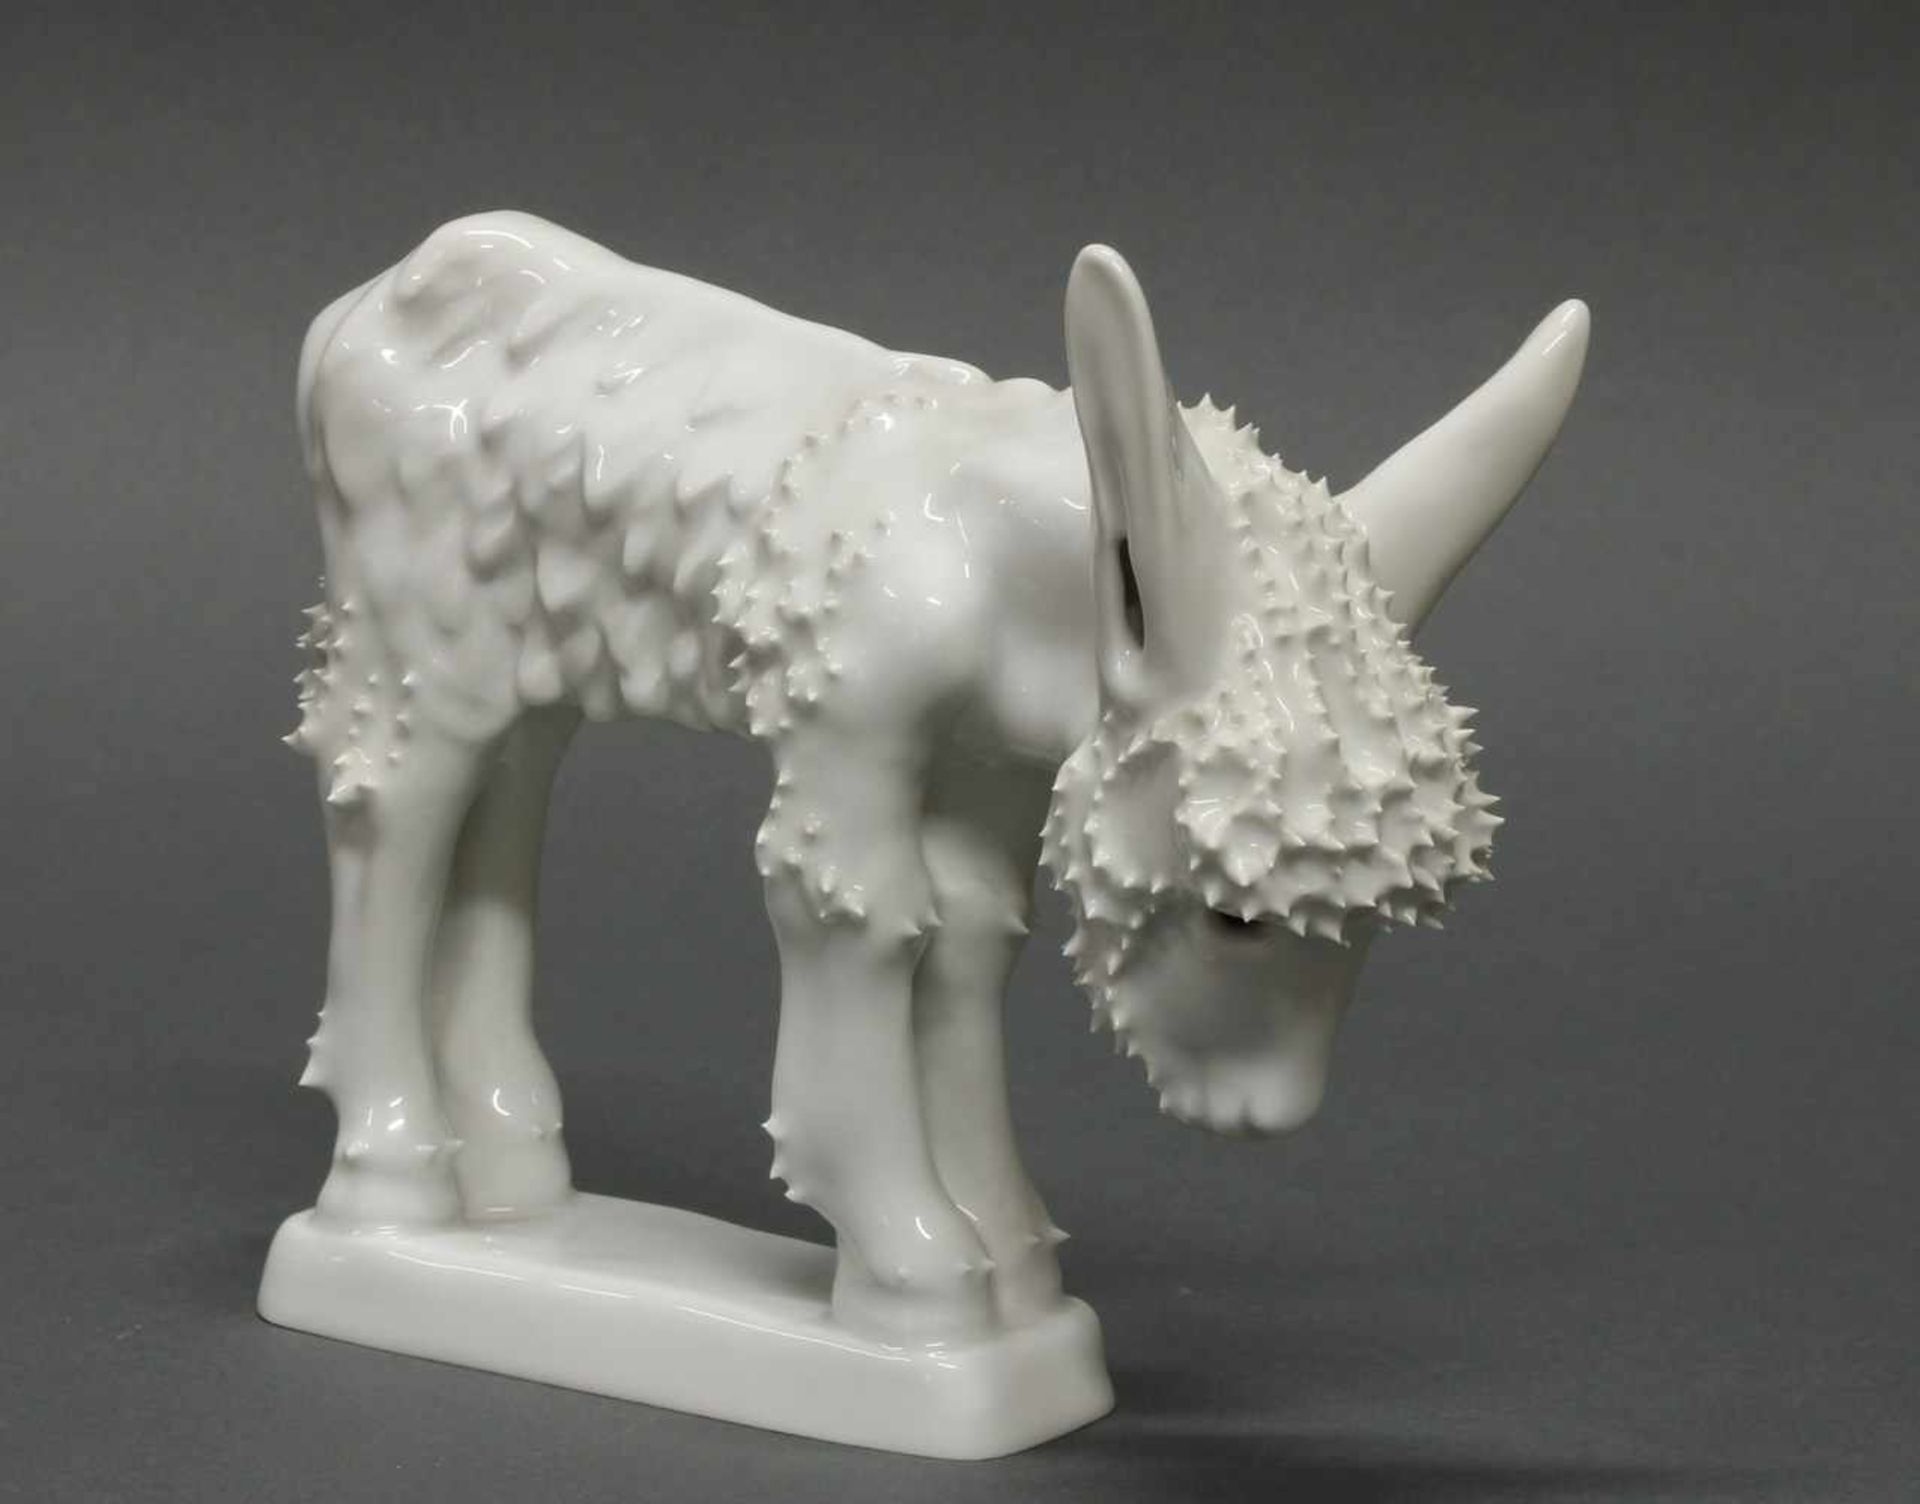 Porzellanfigur, "Esel", KPM Berlin, Weißporzellan, Modellentwurf von Judith Speer, 14 cm hoch- - - - Bild 2 aus 2